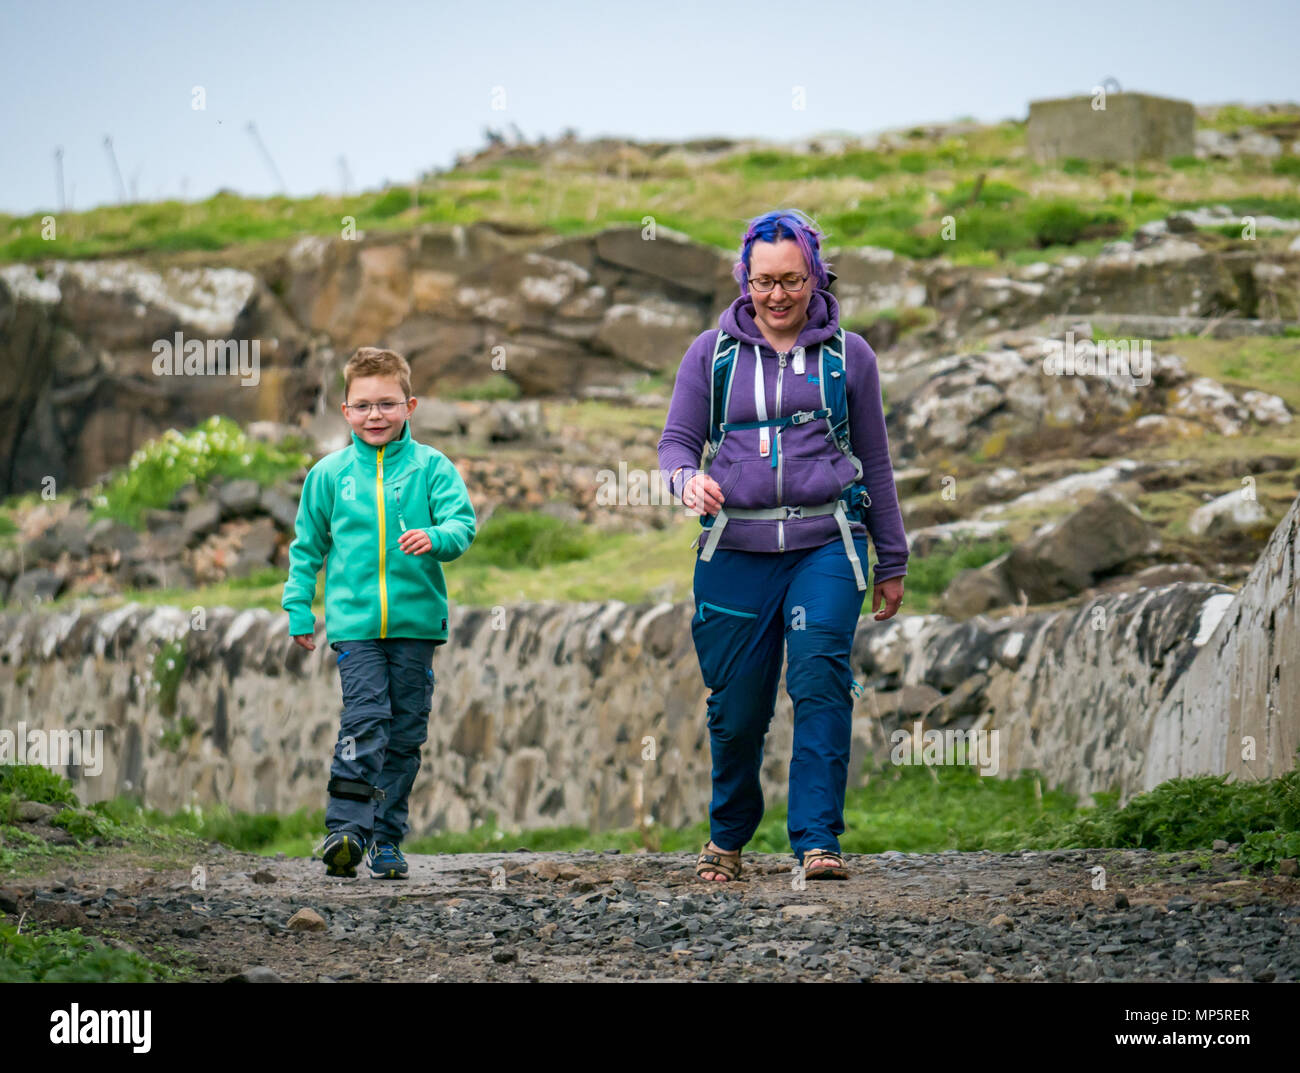 Frau mit gefärbten Haaren und lächelnde Junge mit Brille und Bein Klammer zu Fuß auf die Insel kann, Schottland, Großbritannien Stockfoto